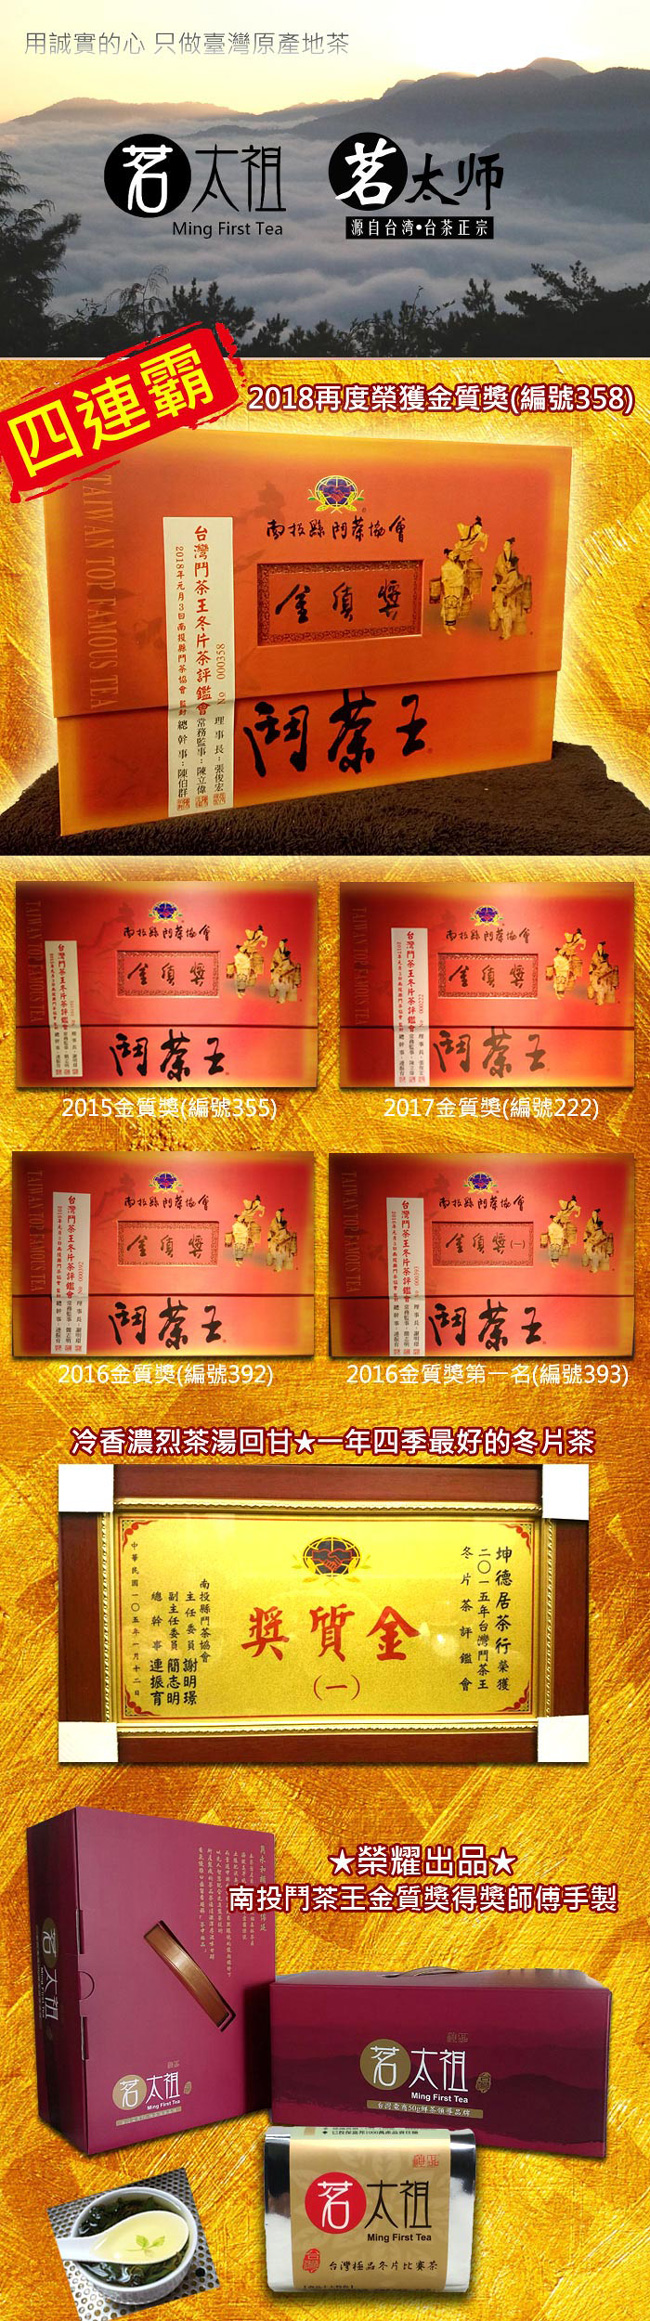 【茗太祖】台灣極品『冬片比賽冠軍茶』真空琉金包金伴手禮10入禮盒組(50gx10)